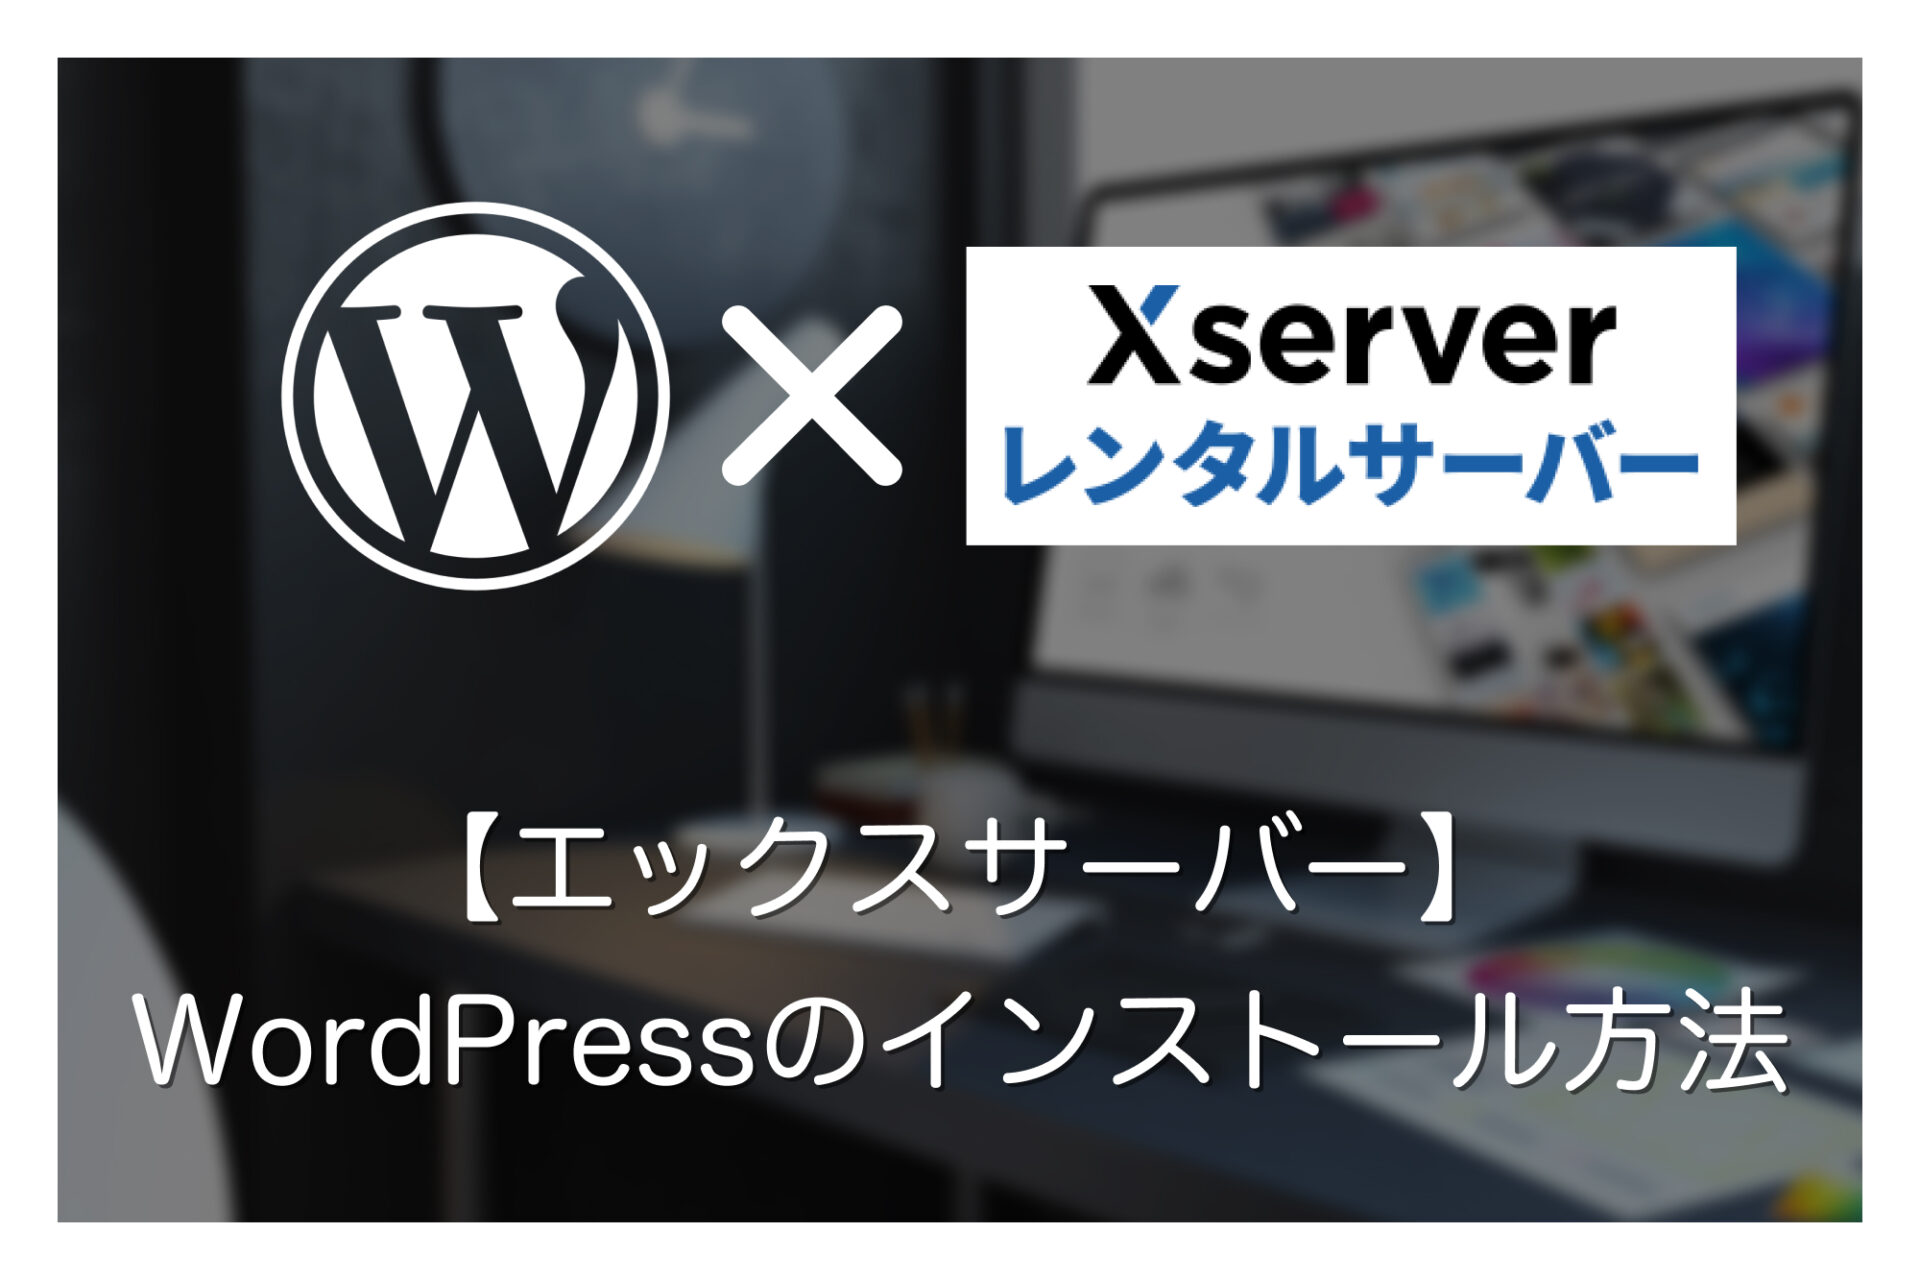 【簡単インストール】エックスサーバーでWordPressブログ・サイトを始める方法